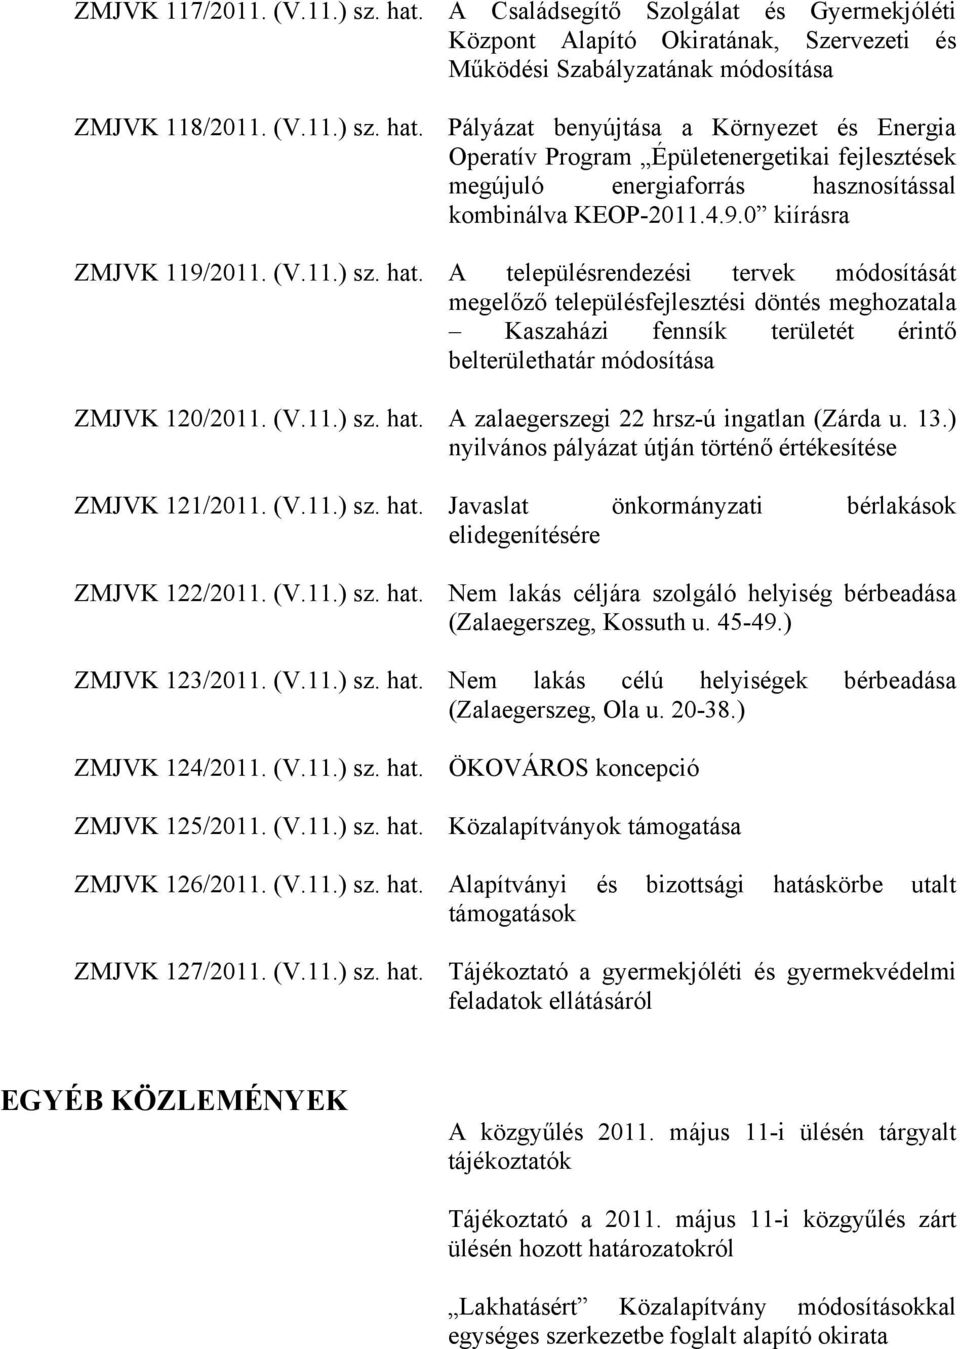 A településrendezési tervek módosítását megelőző településfejlesztési döntés meghozatala Kaszaházi fennsík területét érintő belterülethatár módosítása ZMJVK 120/2011. (V.11.) sz. hat.